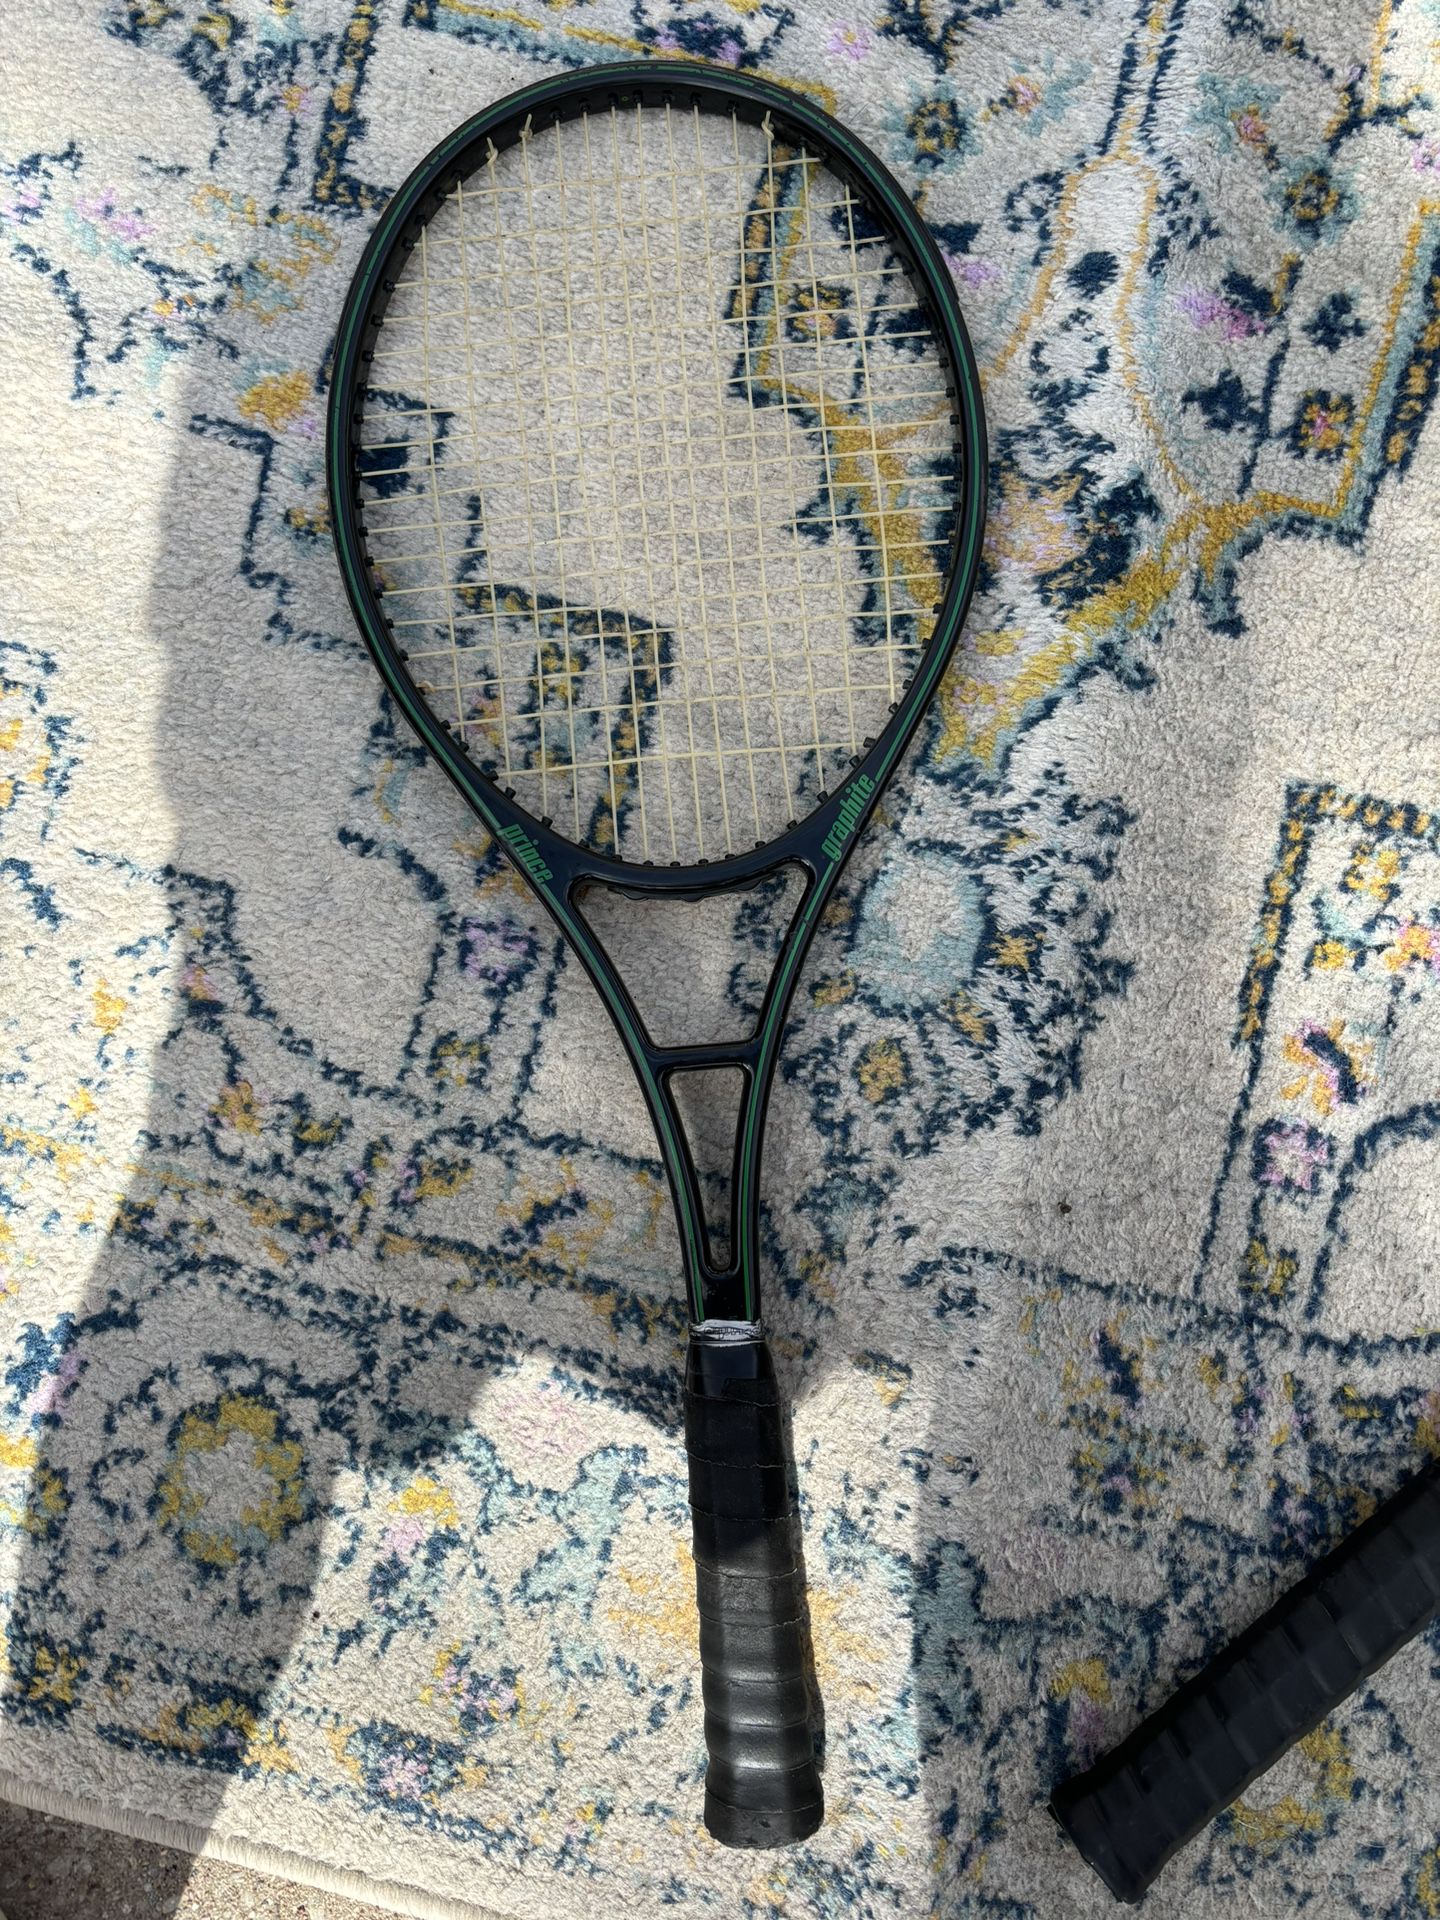 Like New Yonex Graphite Tennis Racket 